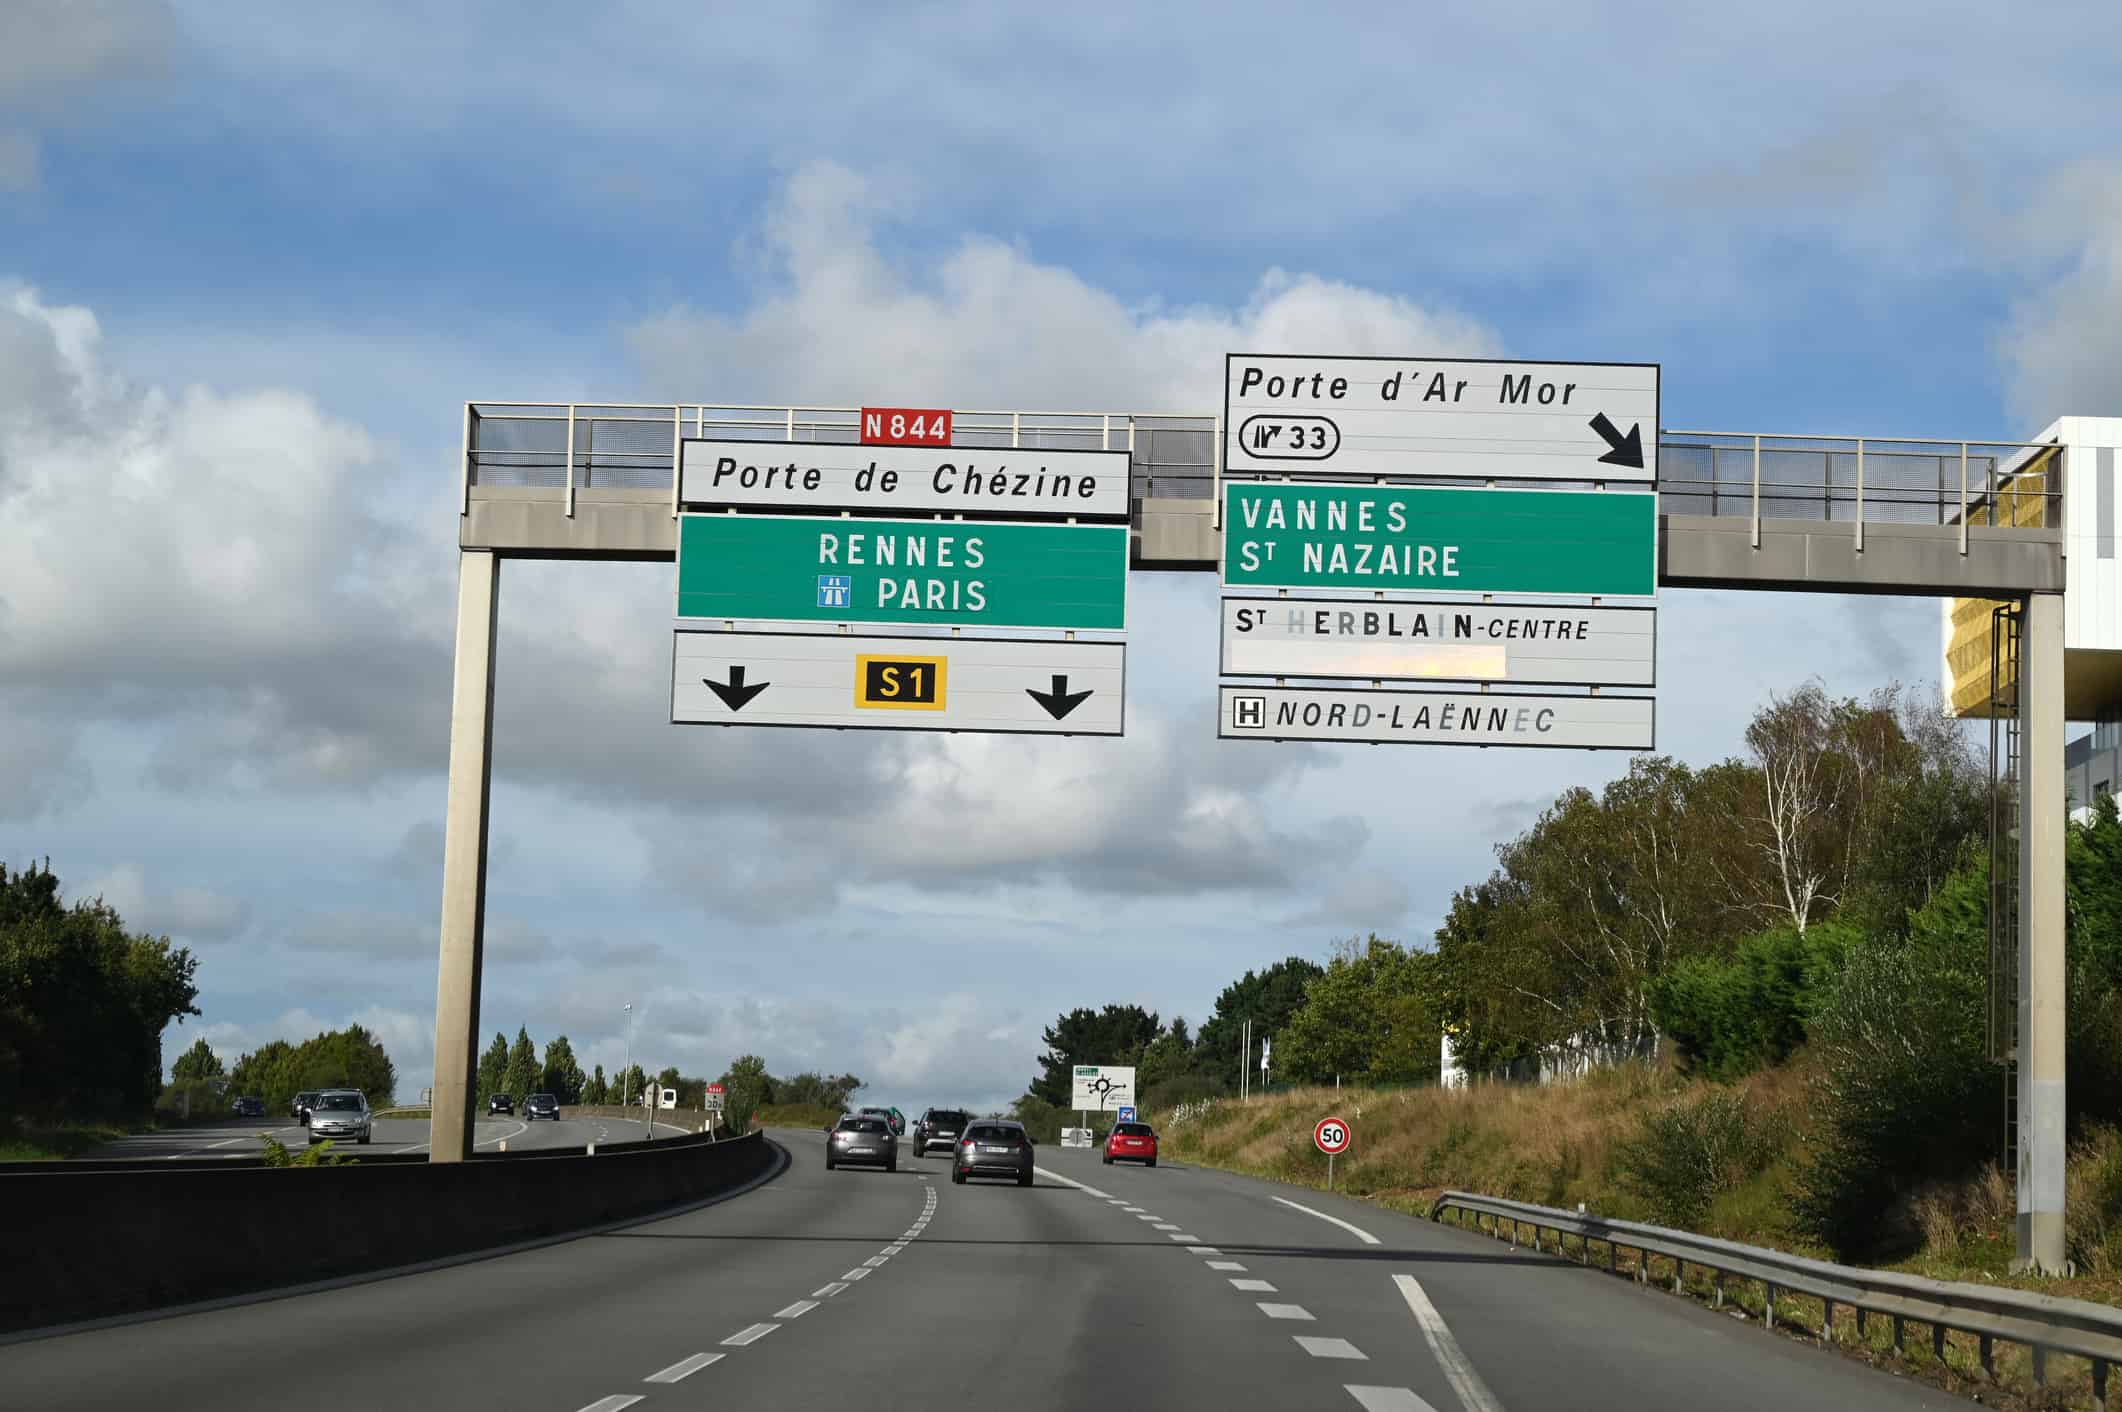 Nantes ring road